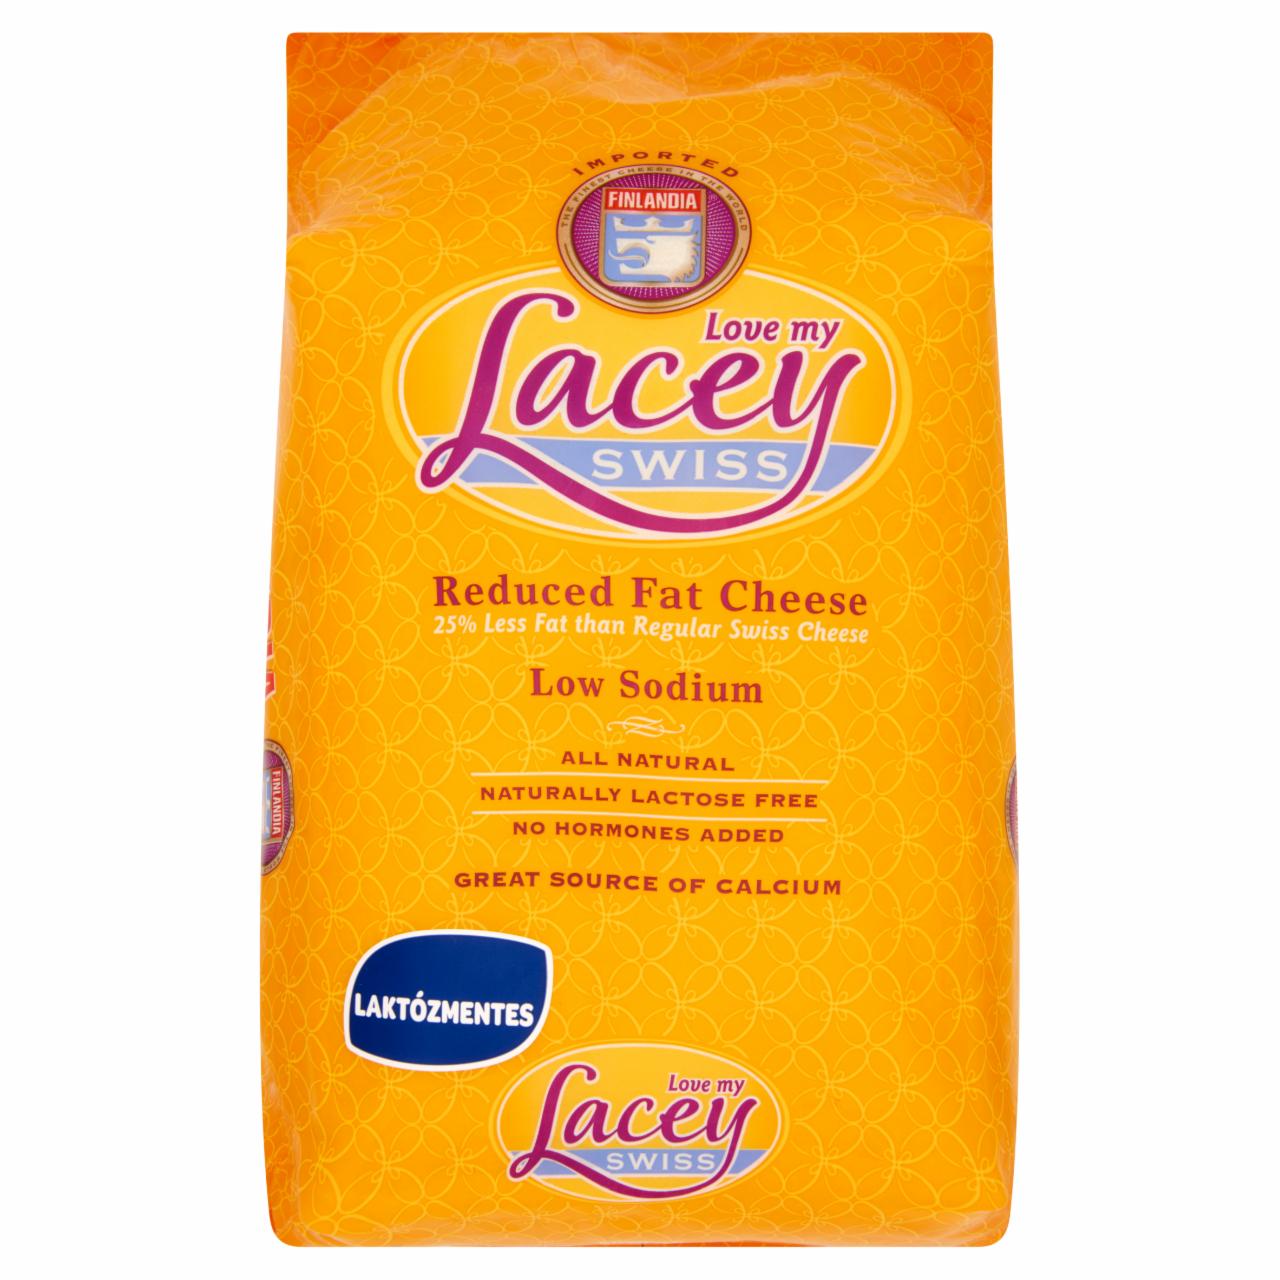 Képek - Lacey Swiss laktózmentes, félzsíros, félkemény, svájci ementáli típusú sajt 250 g